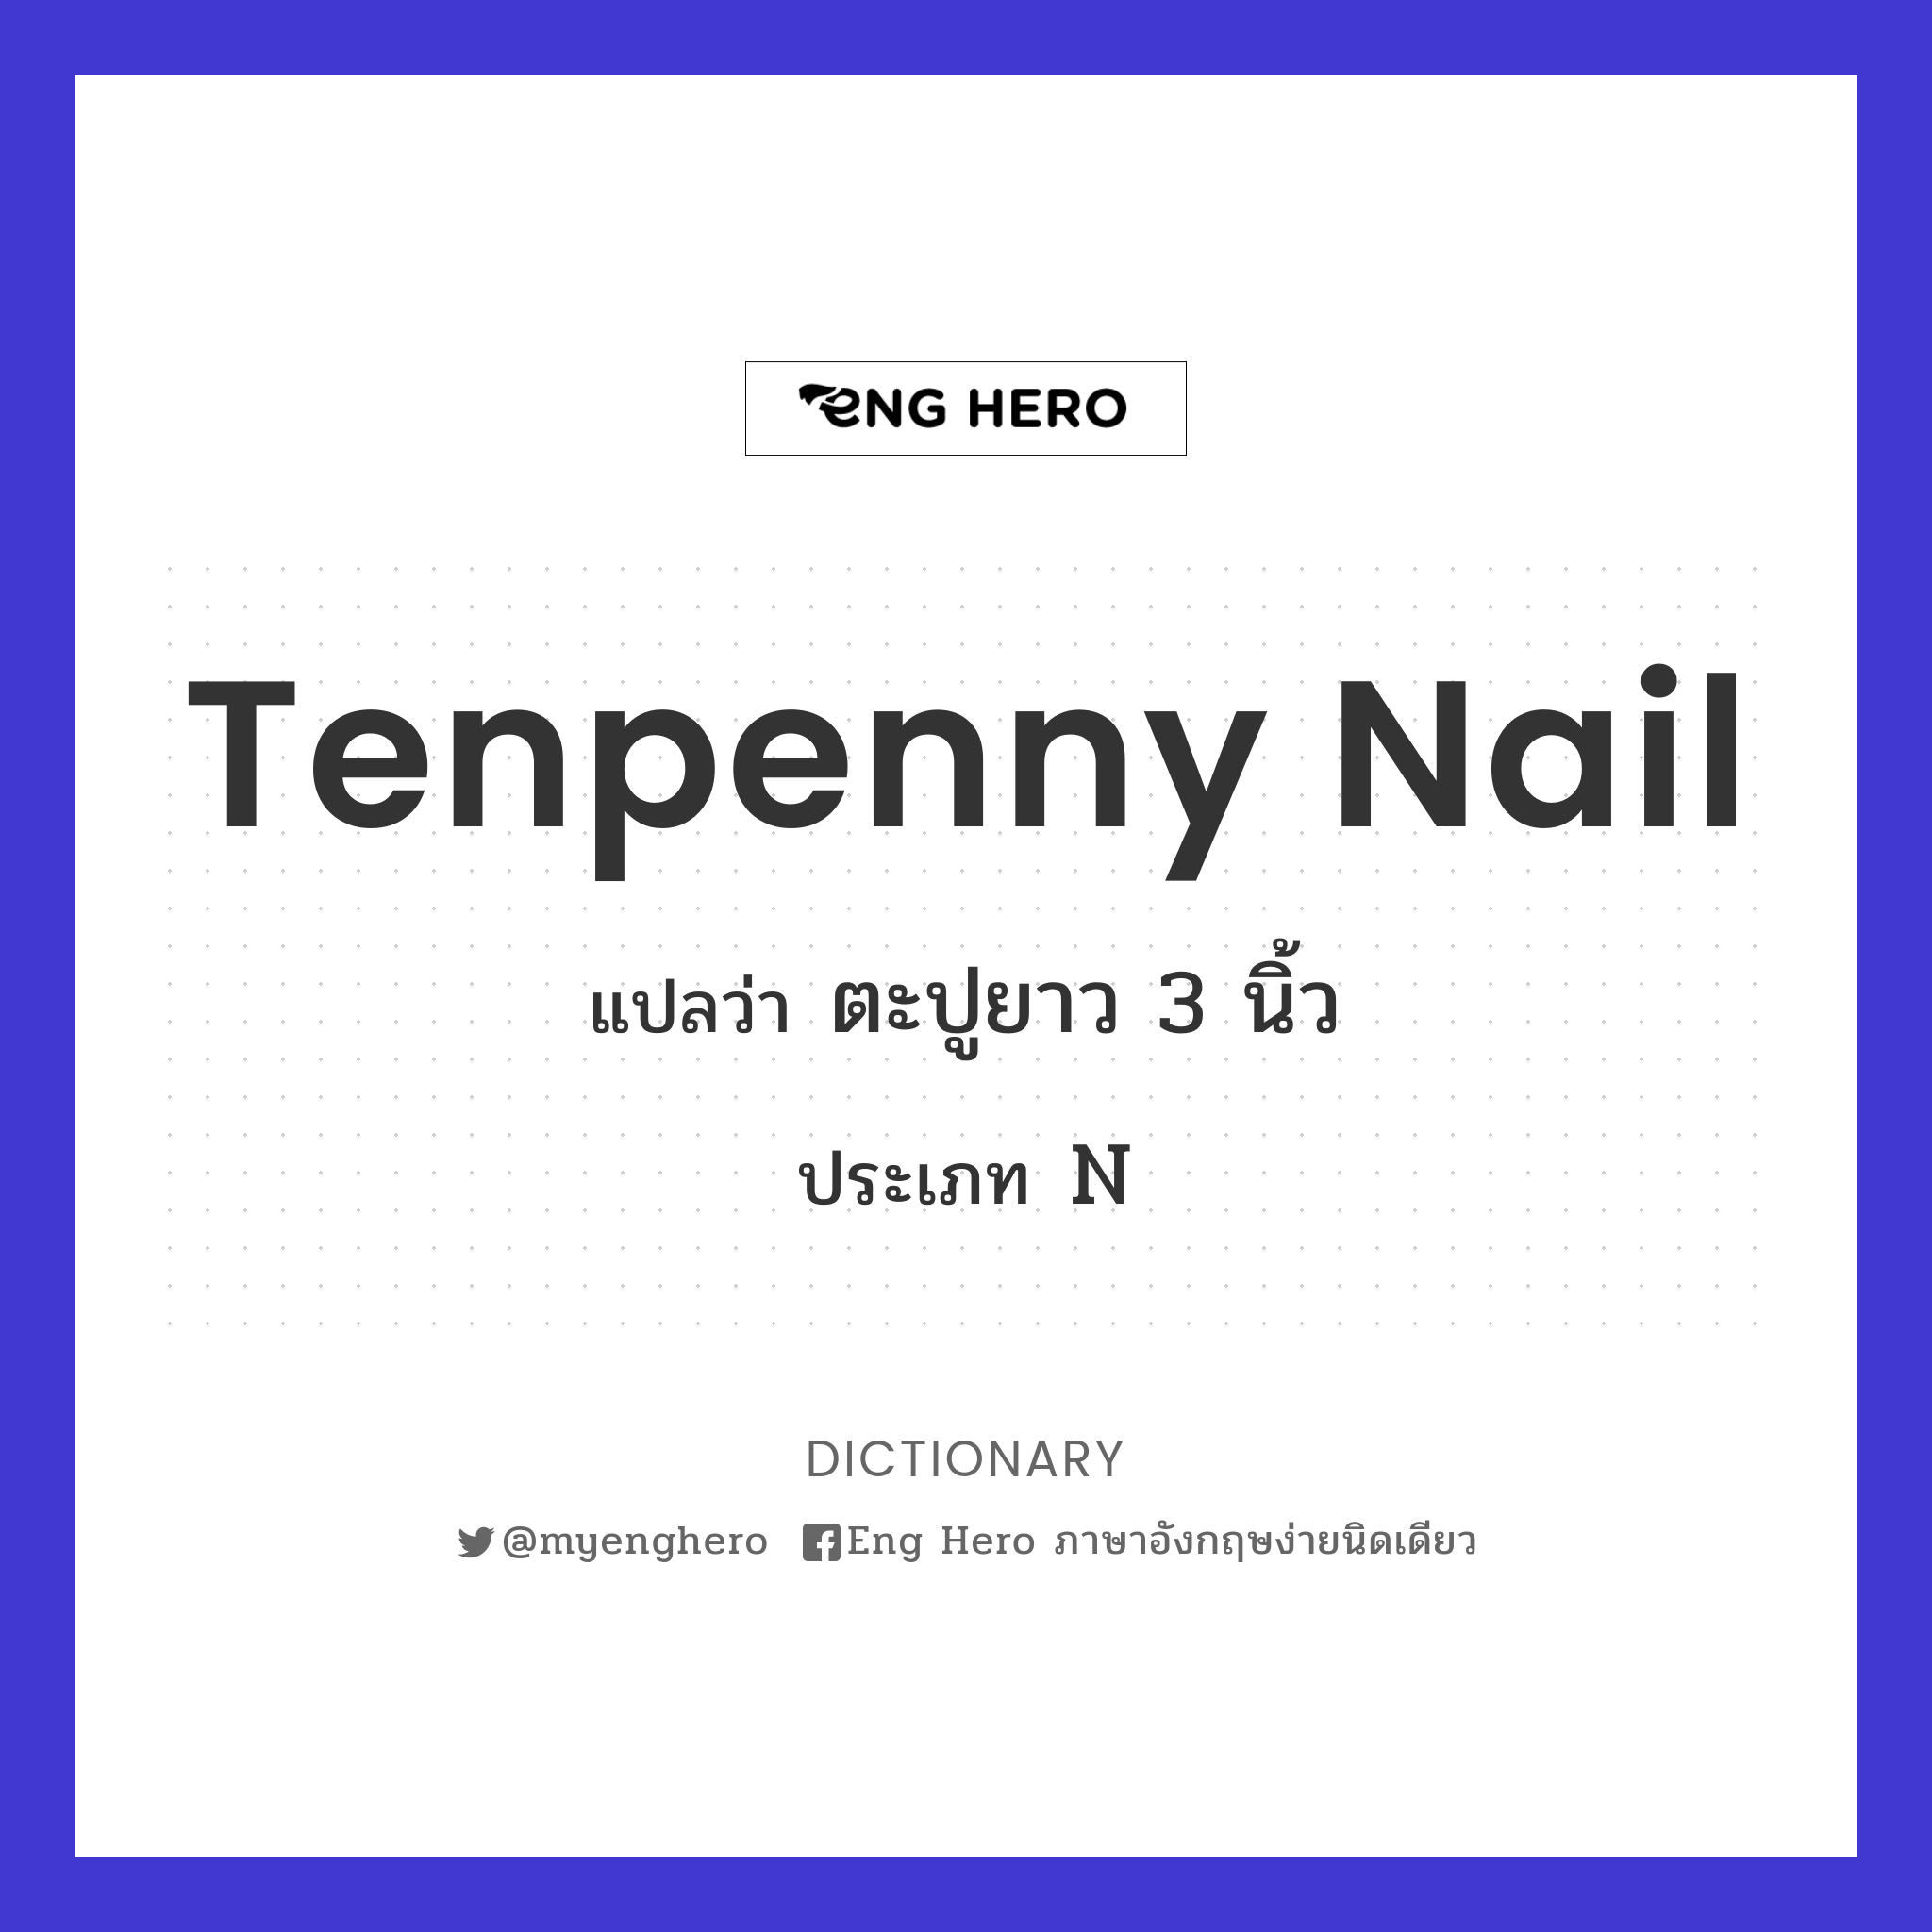 tenpenny nail